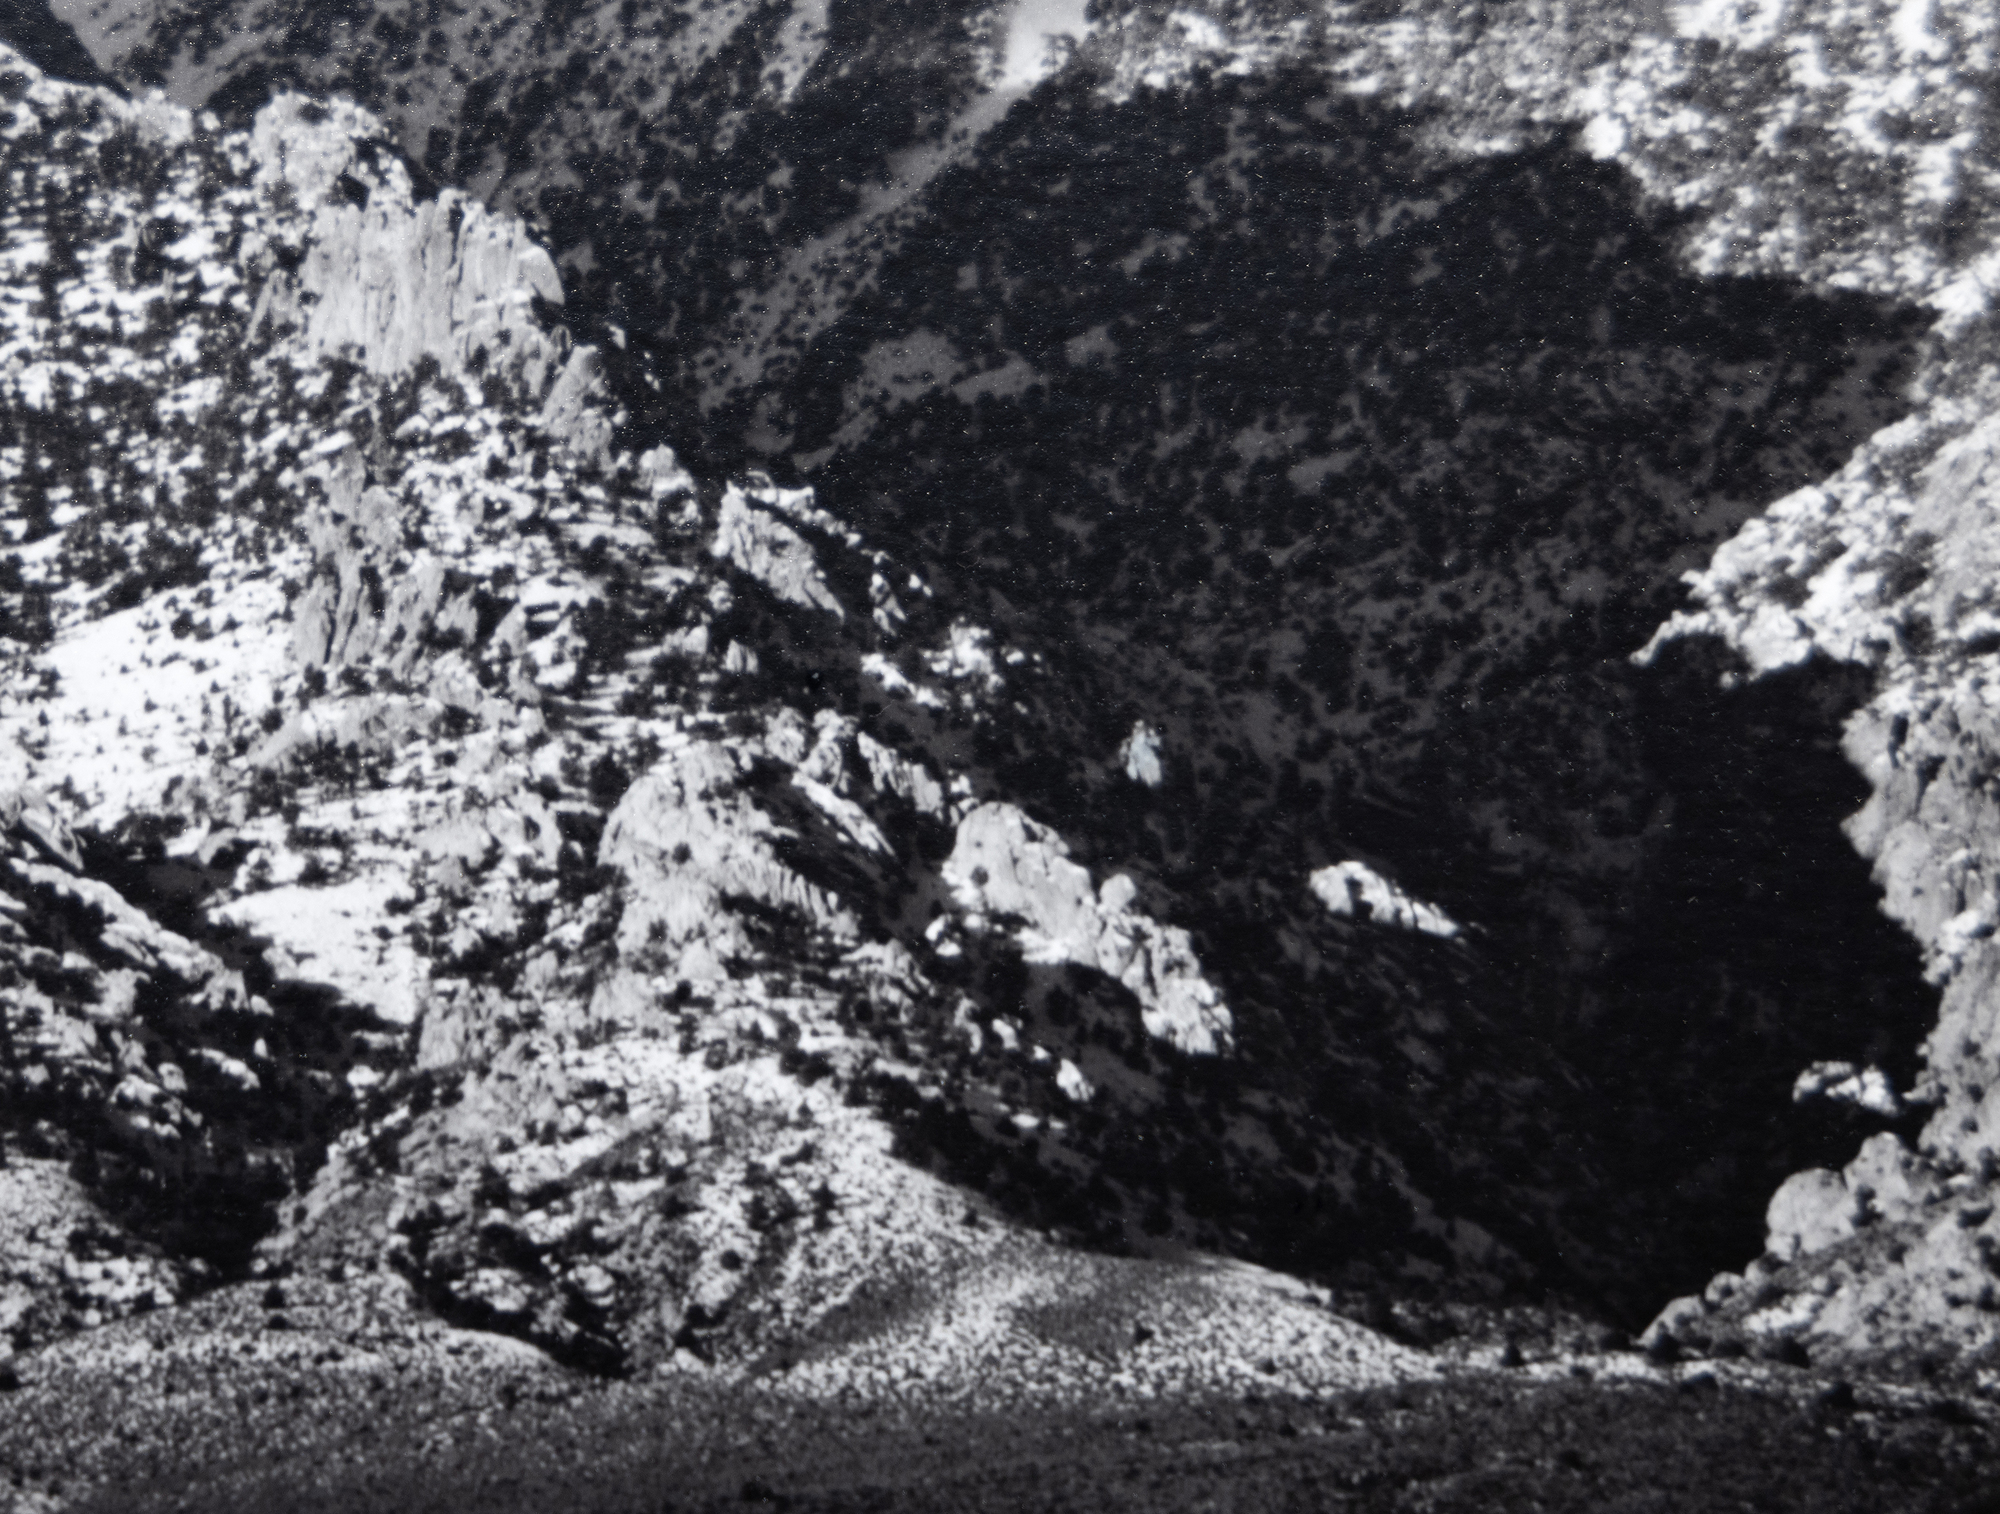 Ansel Adams&#039; Erkundung des Owens Valley und seine Ansichten der hoch aufragenden Ostseite der Sierra Nevada Mountains sind von immenser Bedeutung. Sie gehören zu den ikonischsten Fotografien, die es Adams ermöglichten, die majestätische Weite der Sierra Nevada zu erfassen und gleichzeitig einen lebendigen Eindruck von der Tiefe und Weite des trockenen Talbodens zu vermitteln. Mount Williamson, Sierra Nevada, vom Owens Valley aus fotografiert, wurde wahrscheinlich 1944 aufgenommen, kurz nach der Einführung des Zonensystems, das einen breiten Tonwertumfang und eine ausgewogene Belichtung mit Klarheit sowohl in den Lichtern als auch in den Schatten ermöglichte. Das vorliegende Exemplar, das im August 1978 gedruckt wurde, befindet sich in der Sammlung vieler Museen, gehört aber unter Sammlern zu den selteneren Abzügen von Ansel Adams.